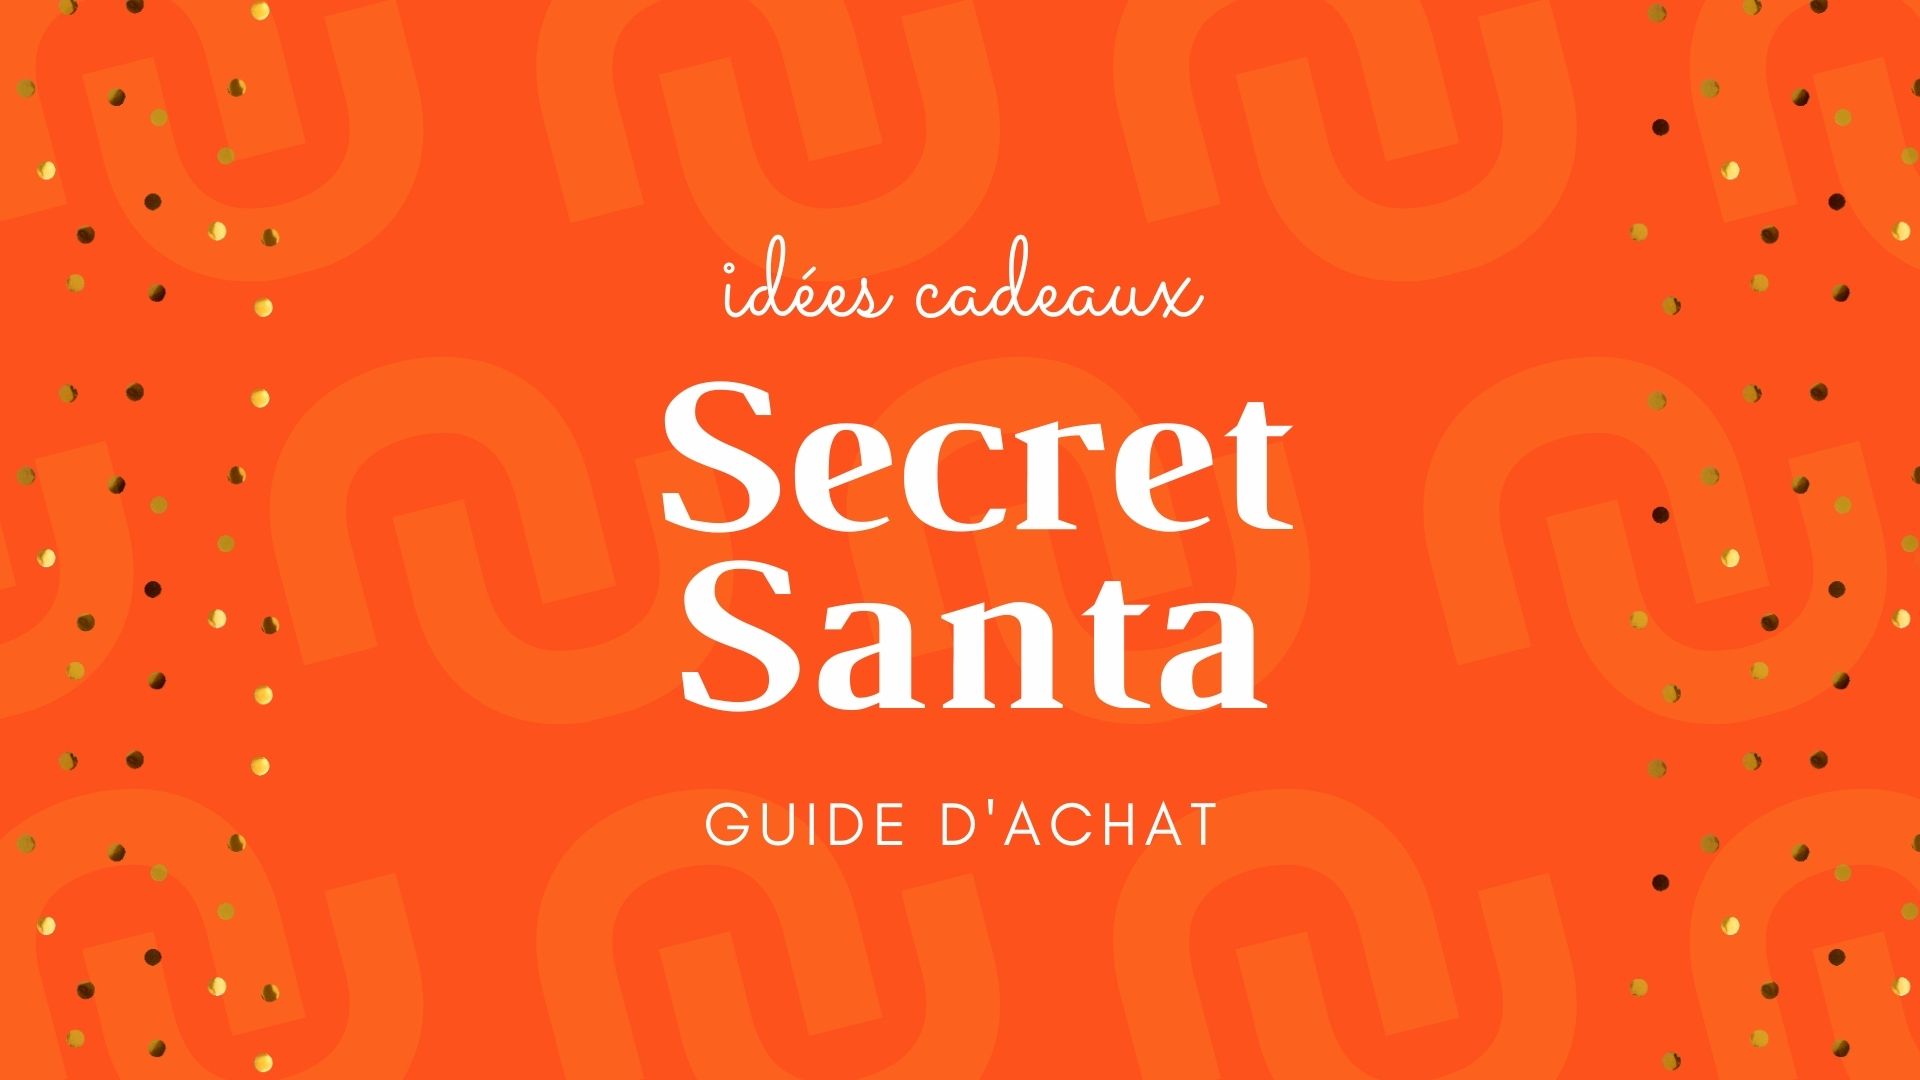 Nos idées de cadeaux pour un secret santa – Blog BUT